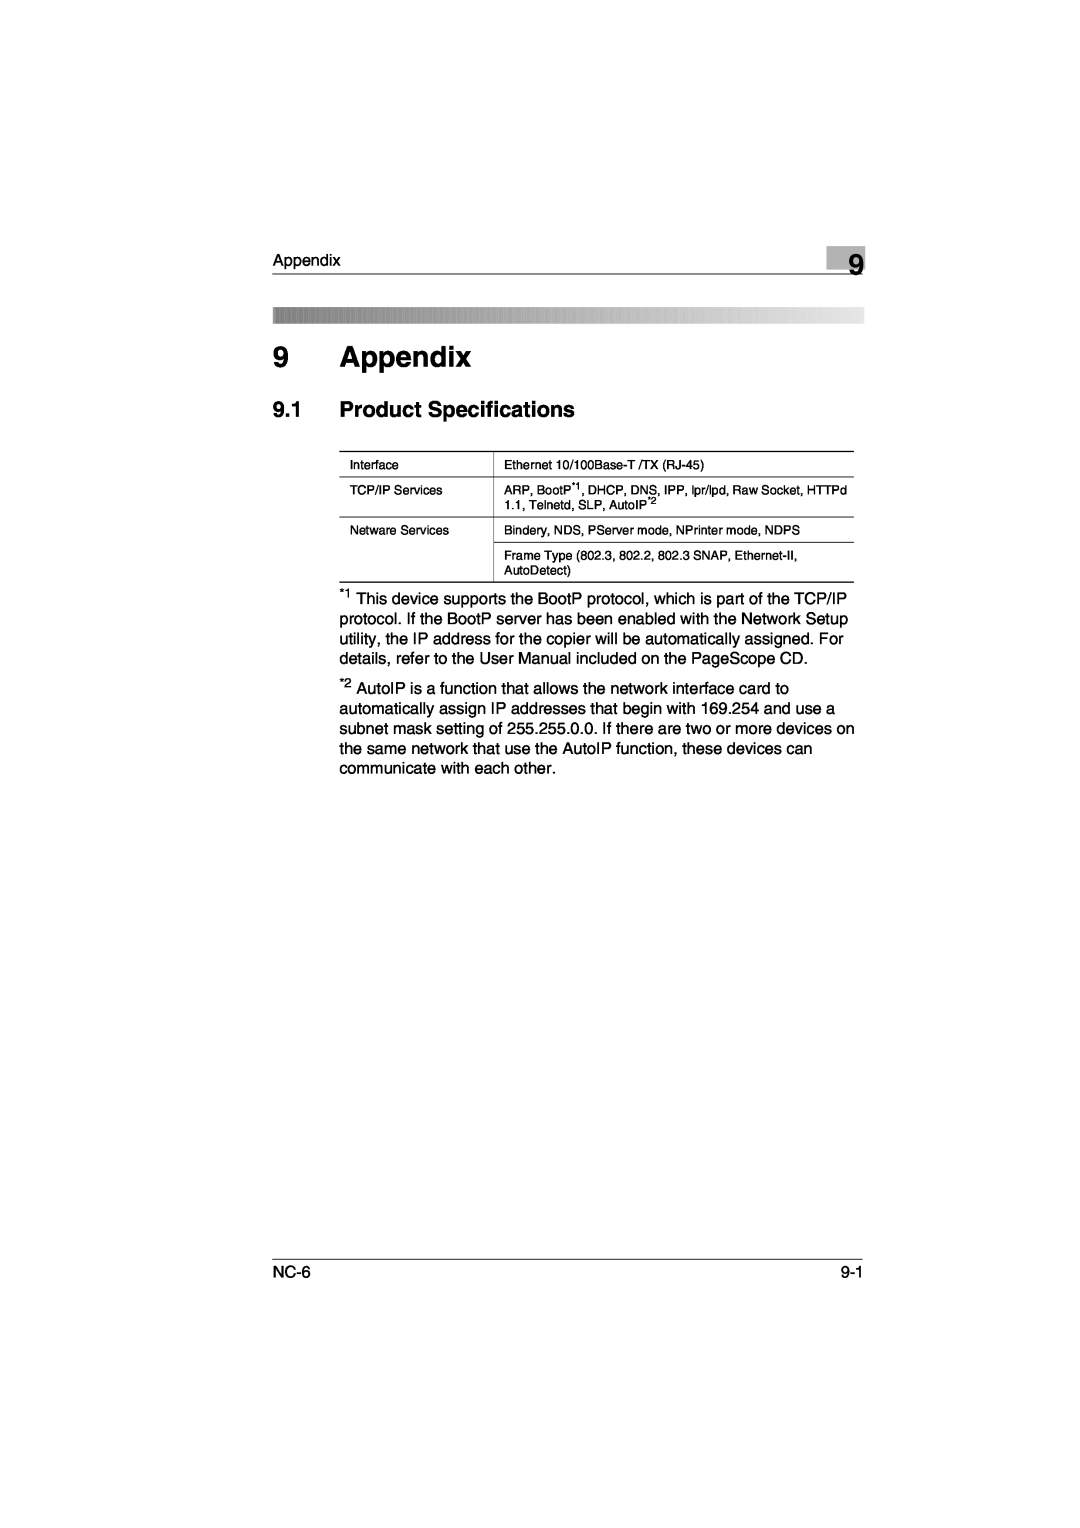 Konica Minolta NC-6 user manual Appendix, Product Specifications 